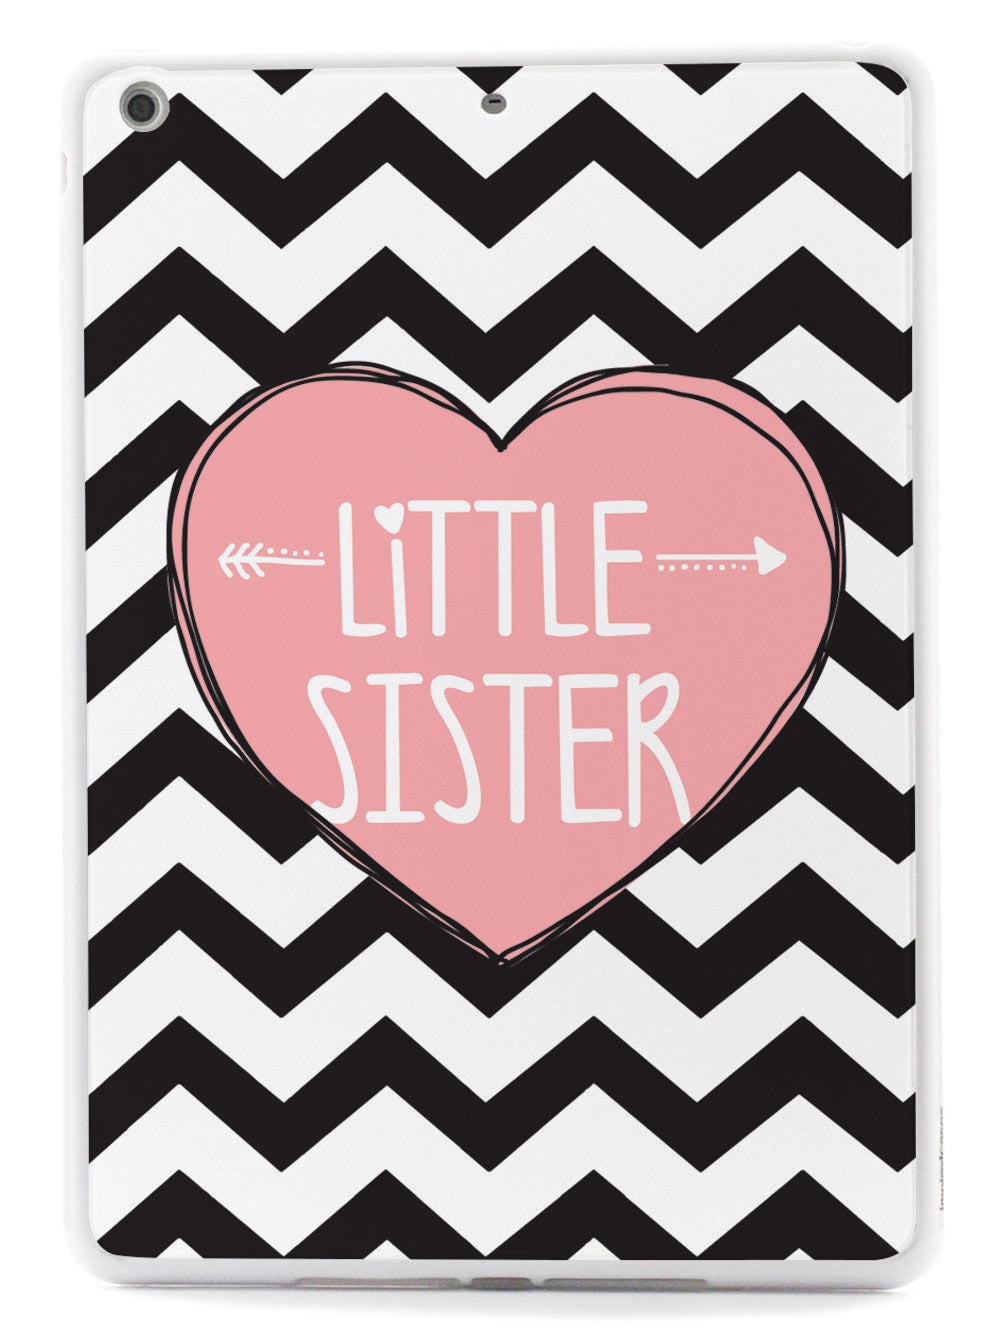 Sisterly Love - Little Sister - Chevron Case